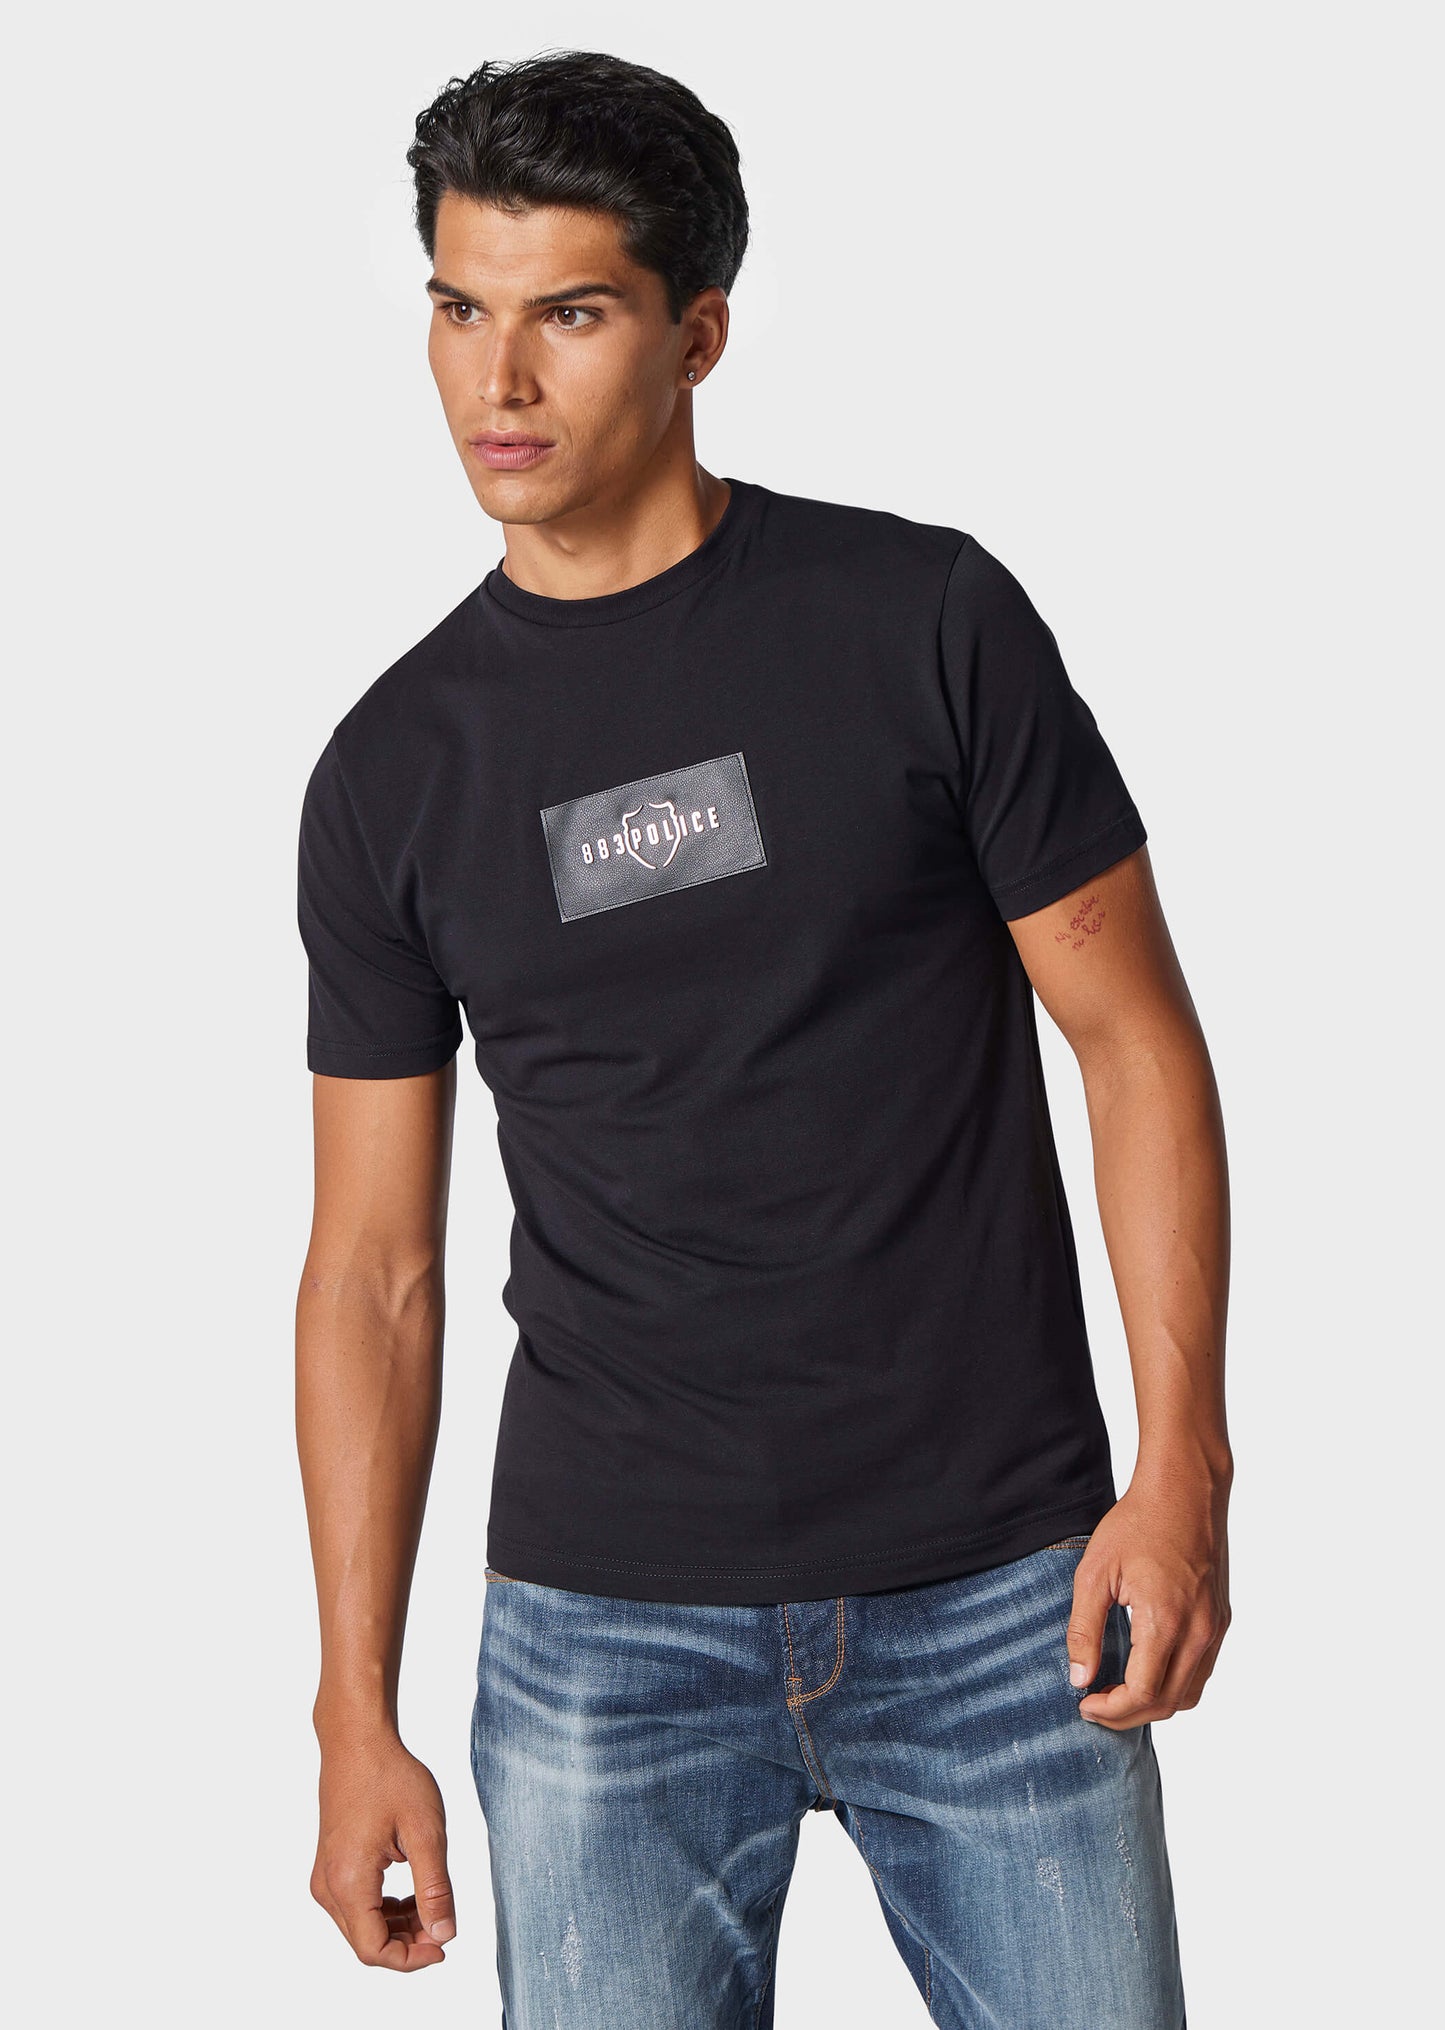 Forss Black T-Shirt